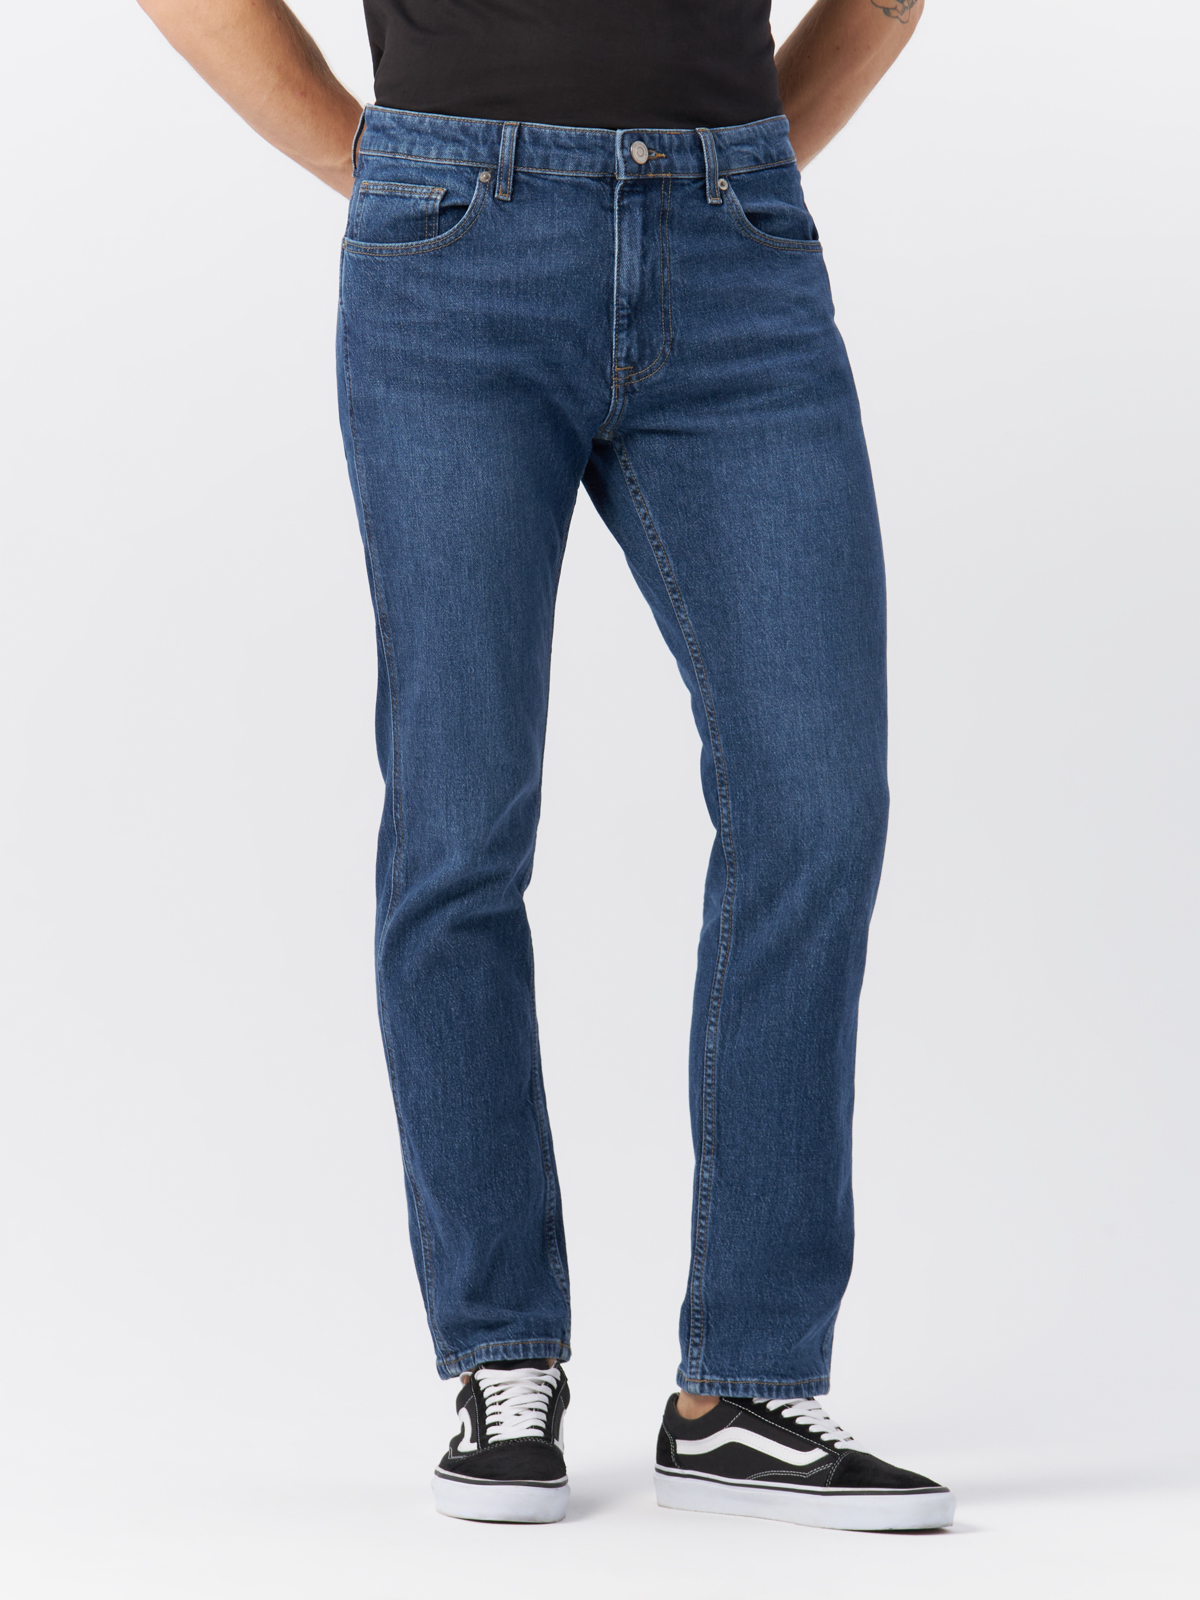 Джинсы Cross Jeans для мужчин, C 132-071, размер 33-32, синие